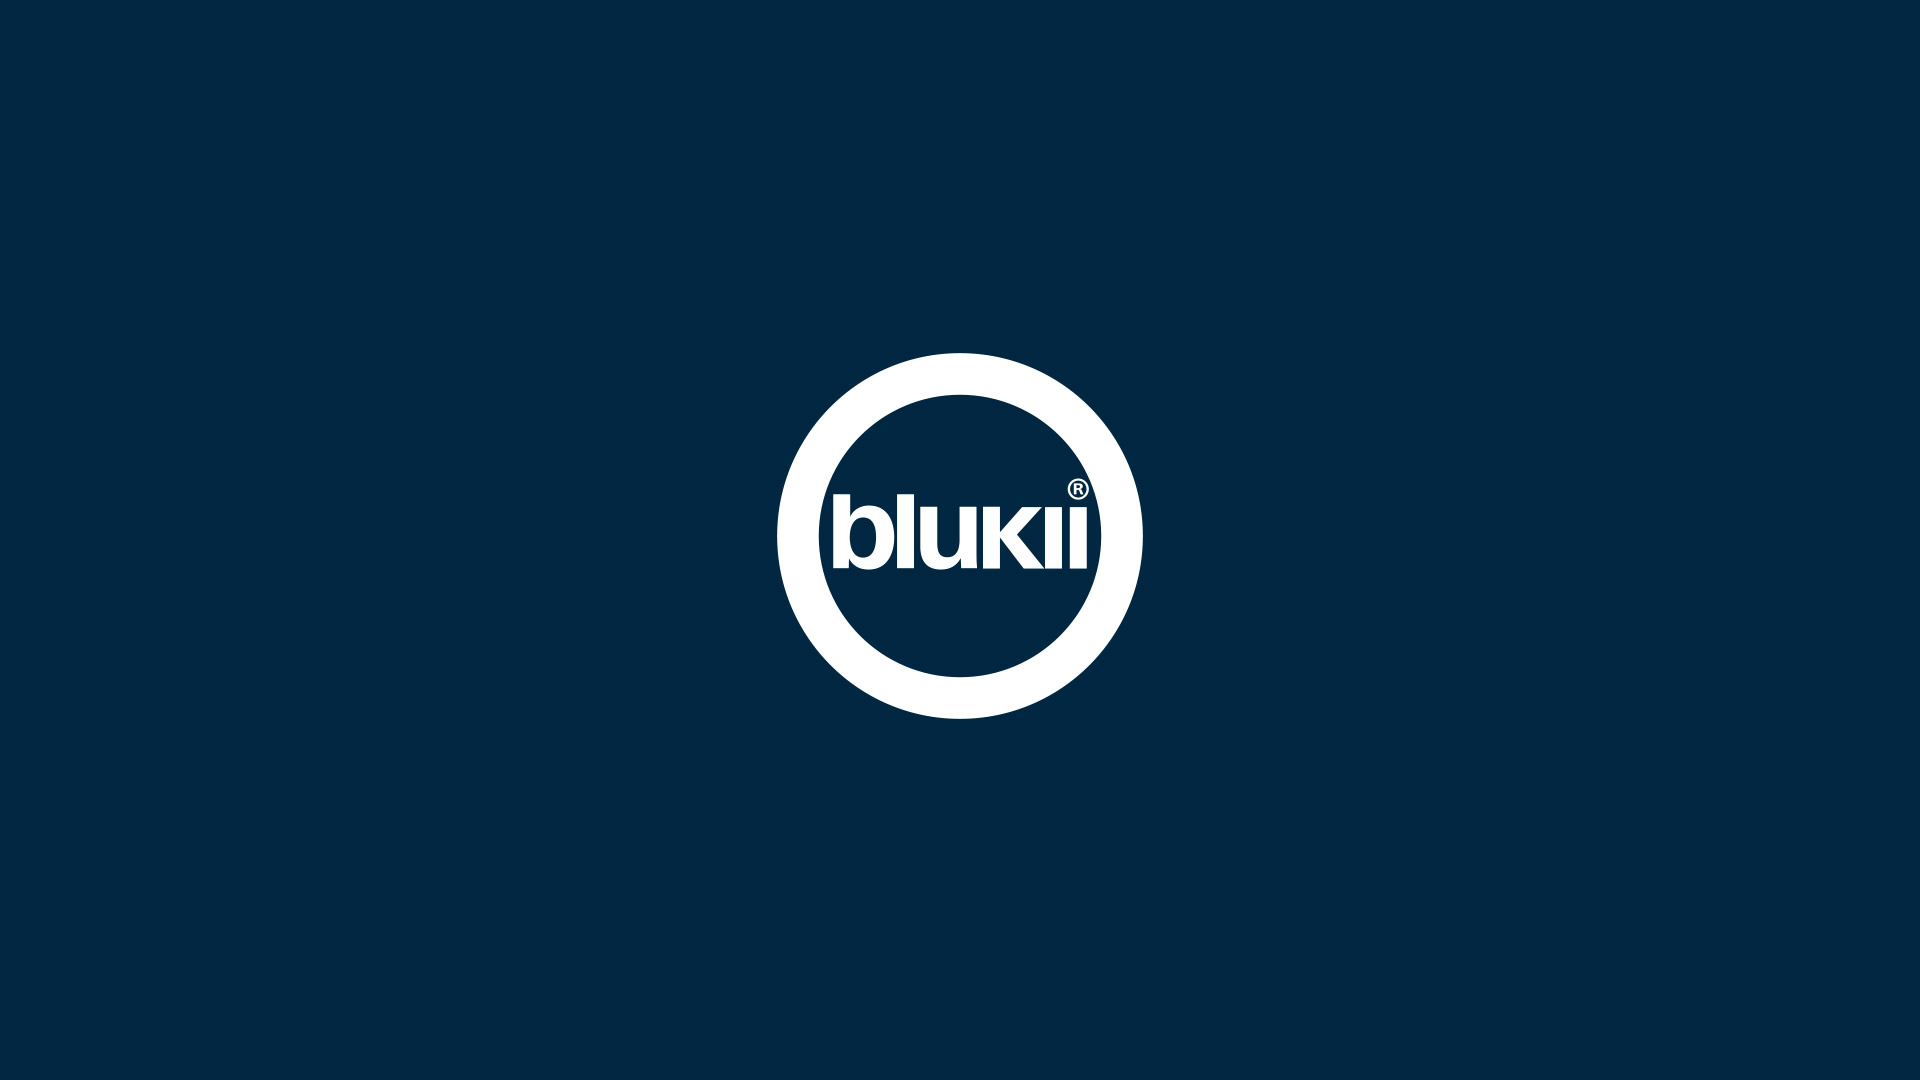 (c) Blukii.com